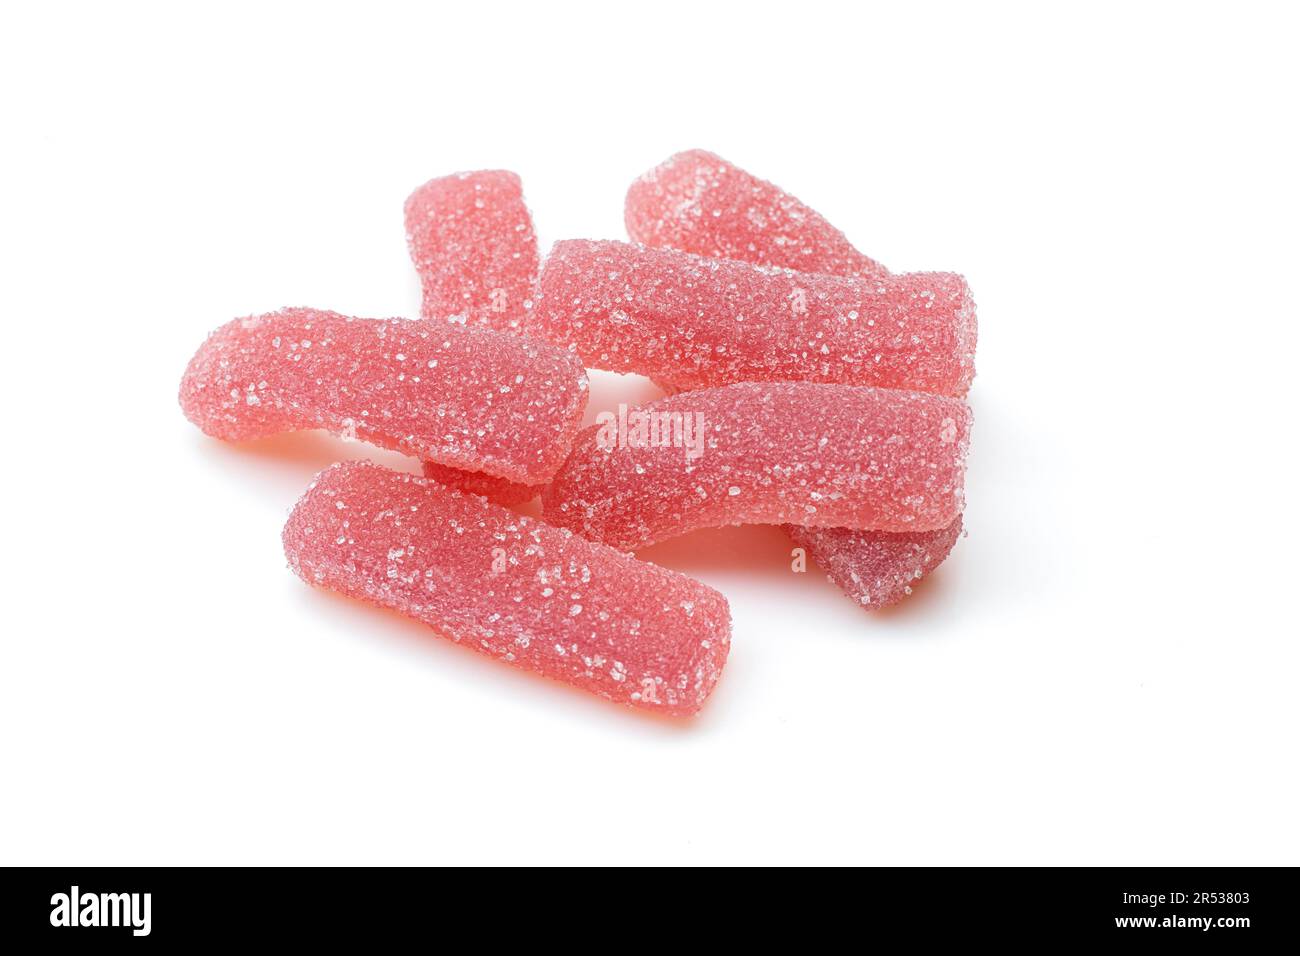 Pile de bonbons rouges en gelée sucrée isolés sur fond blanc. Vers délicieux traiter Banque D'Images